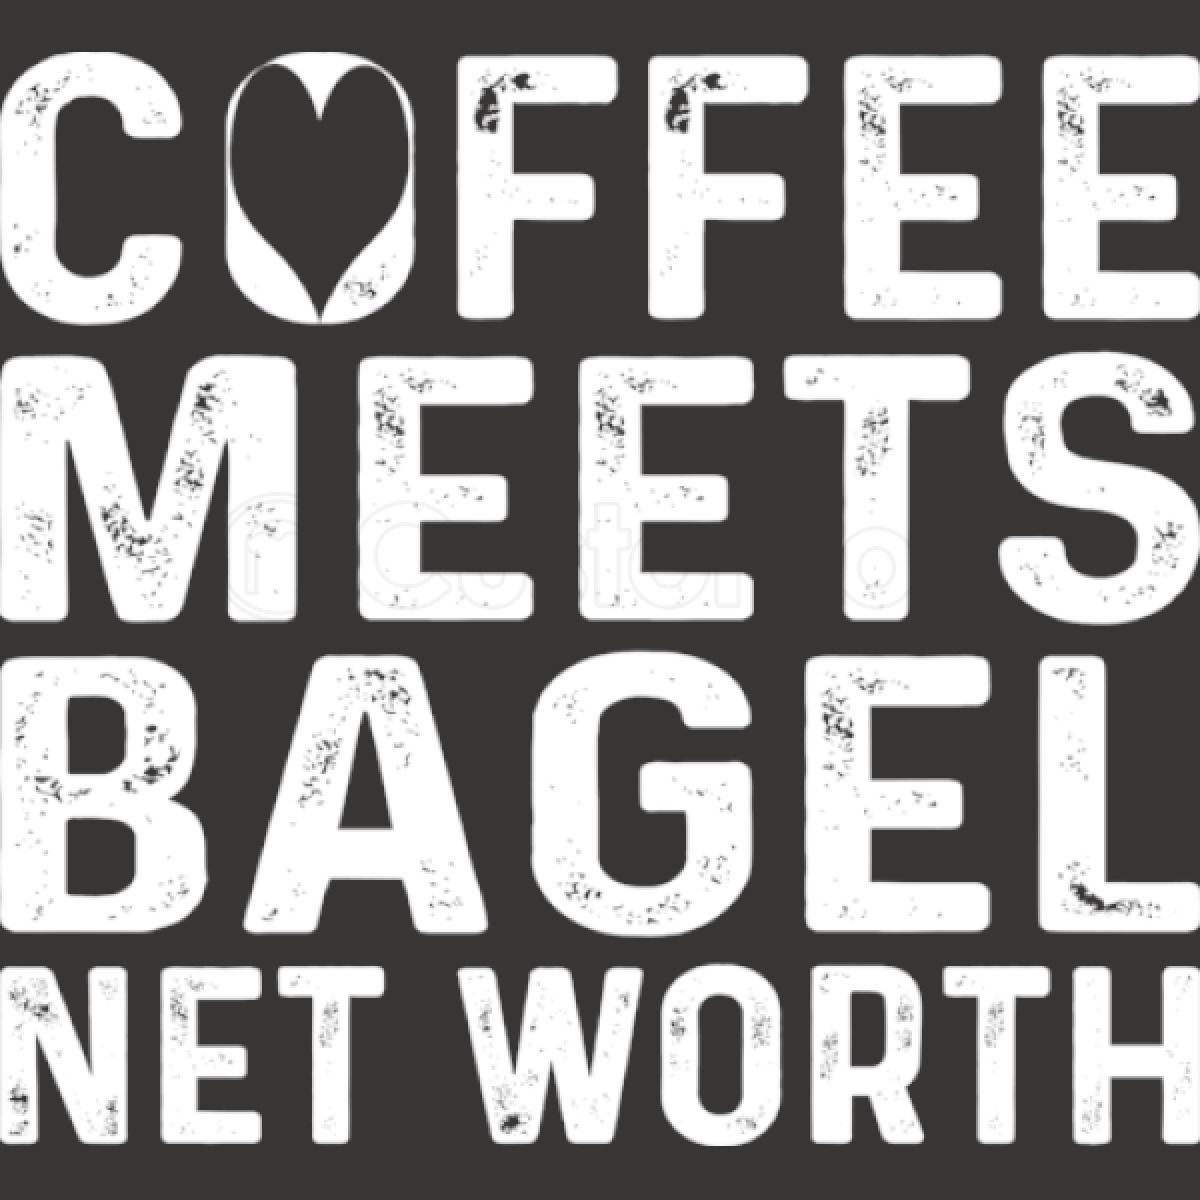 Meets bagel worth 2018 net coffee Coffee Meets